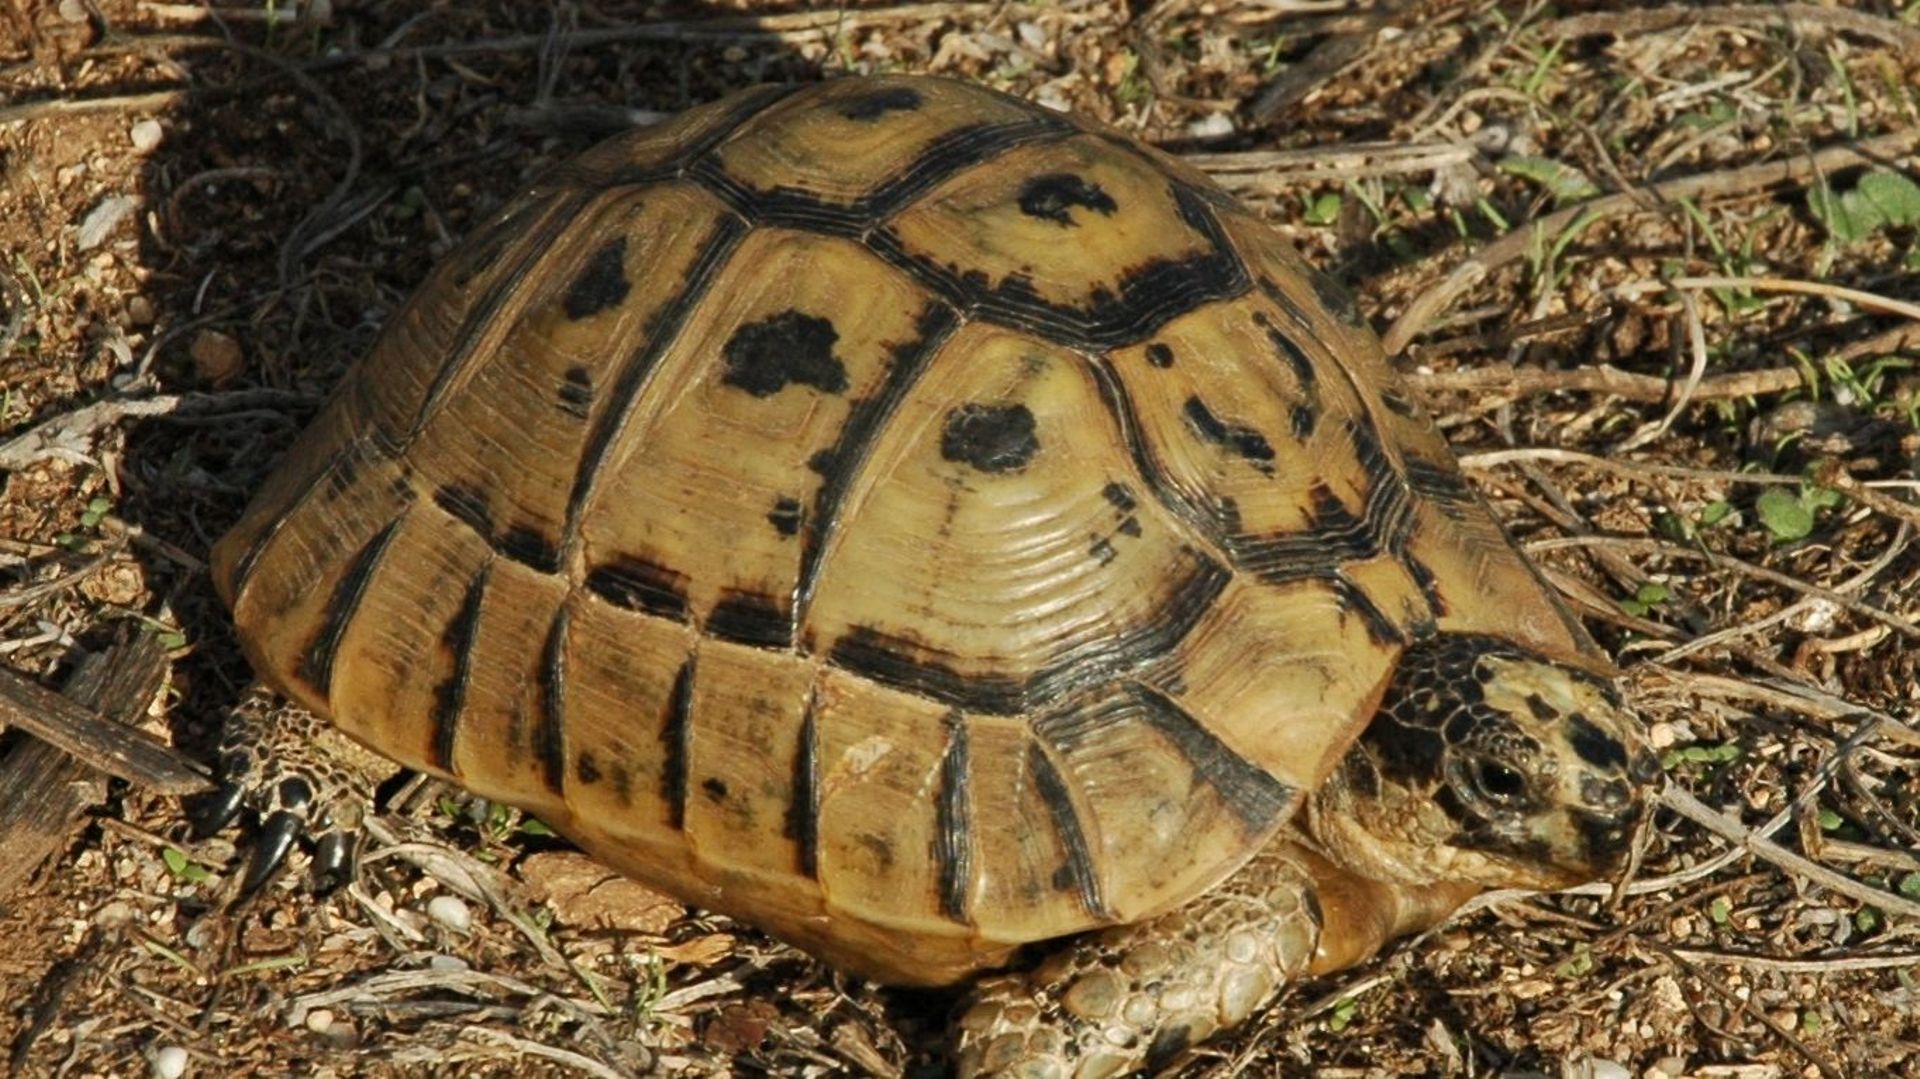 Saisie spectaculaire de plus de 300 tortues par la police de Courtrai